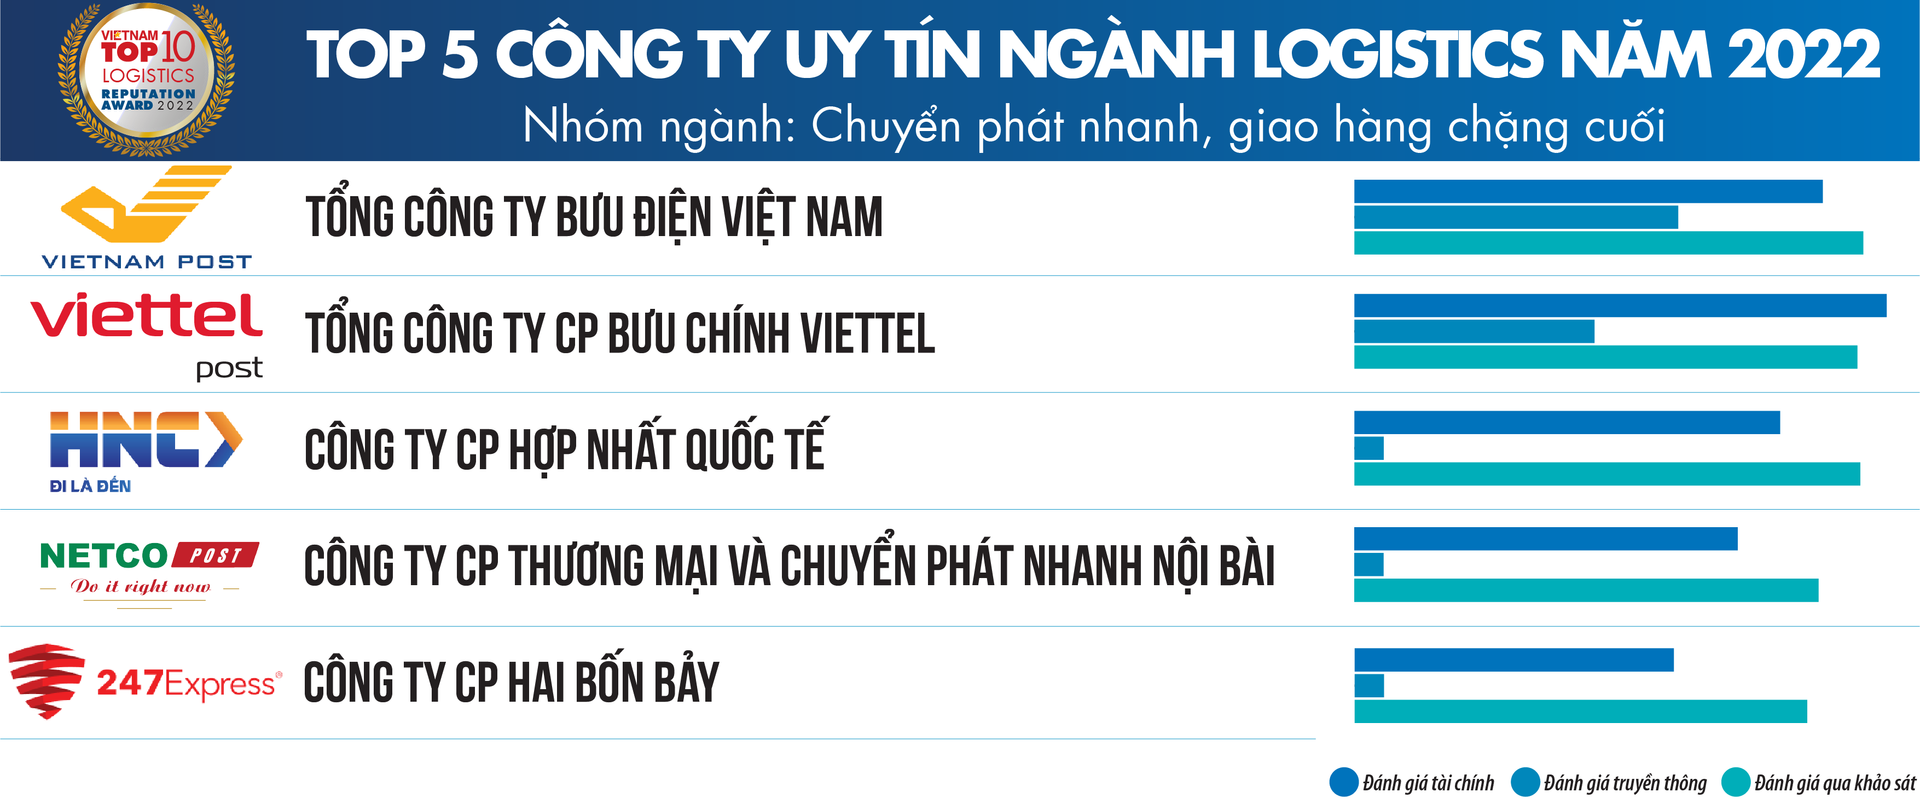 Top công ty uy tín ngành logistics 2022: Vietnam Post và Viettel Post dẫn đầu nhóm chuyển phát nhanh, - Ảnh 2.